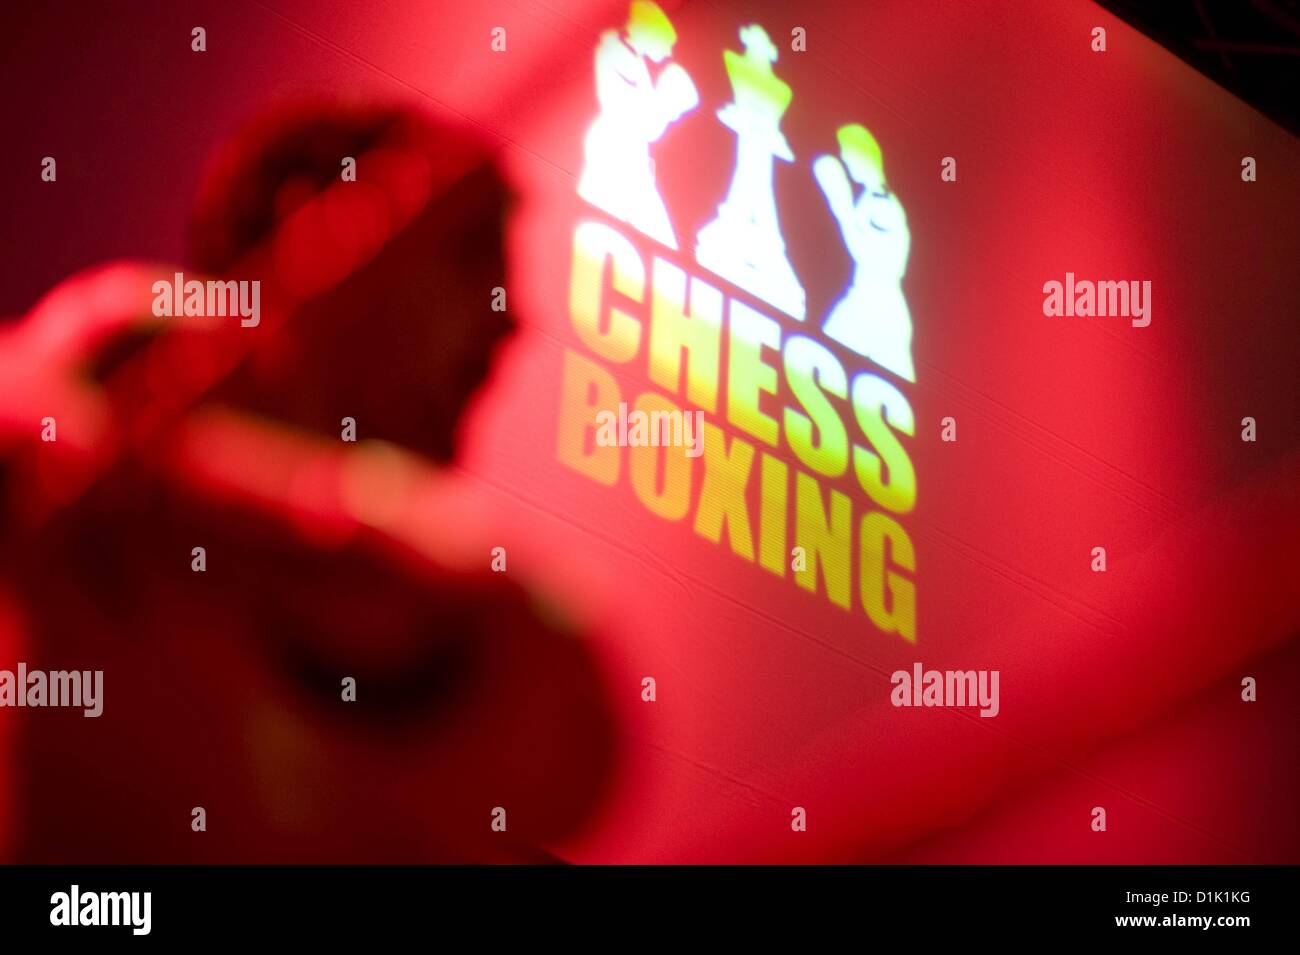 28 07 2012 IPON Meisterschaften 2012 Berlin. Das Logo der Chess boxing Championships 2012 in der Platoon Kunsthalle in Berlin. Diese neue Sportart kombiniert Schach mit Fäusten, Boxen und Schach spielen Stockfoto